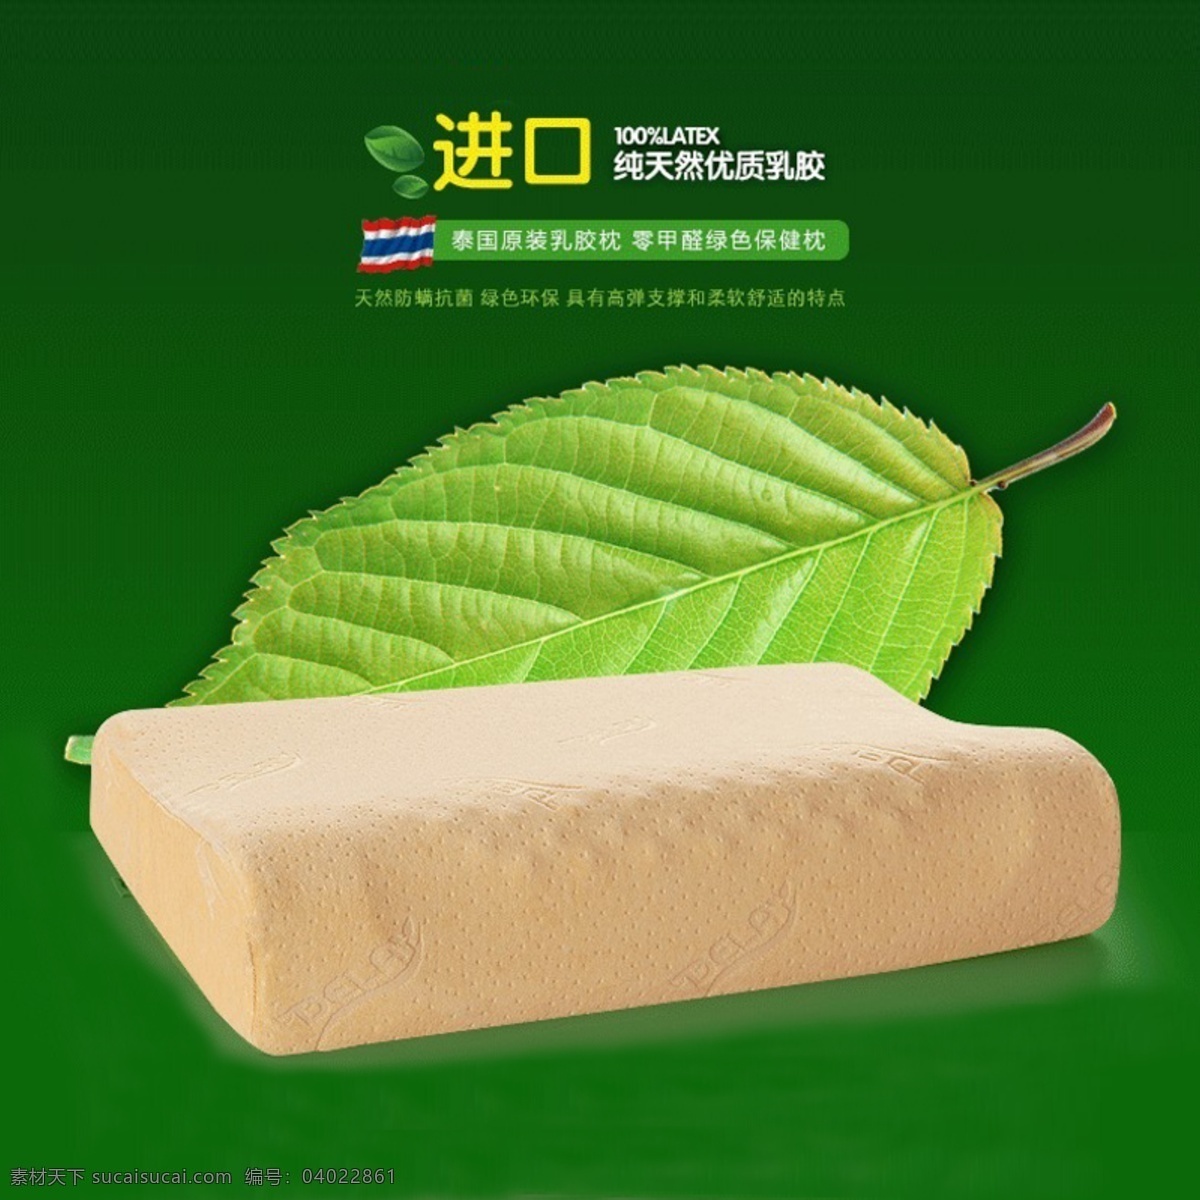 天然乳胶枕 泰国进口 枕头 乳胶枕 淘宝 天猫 京东产品主图 绿色